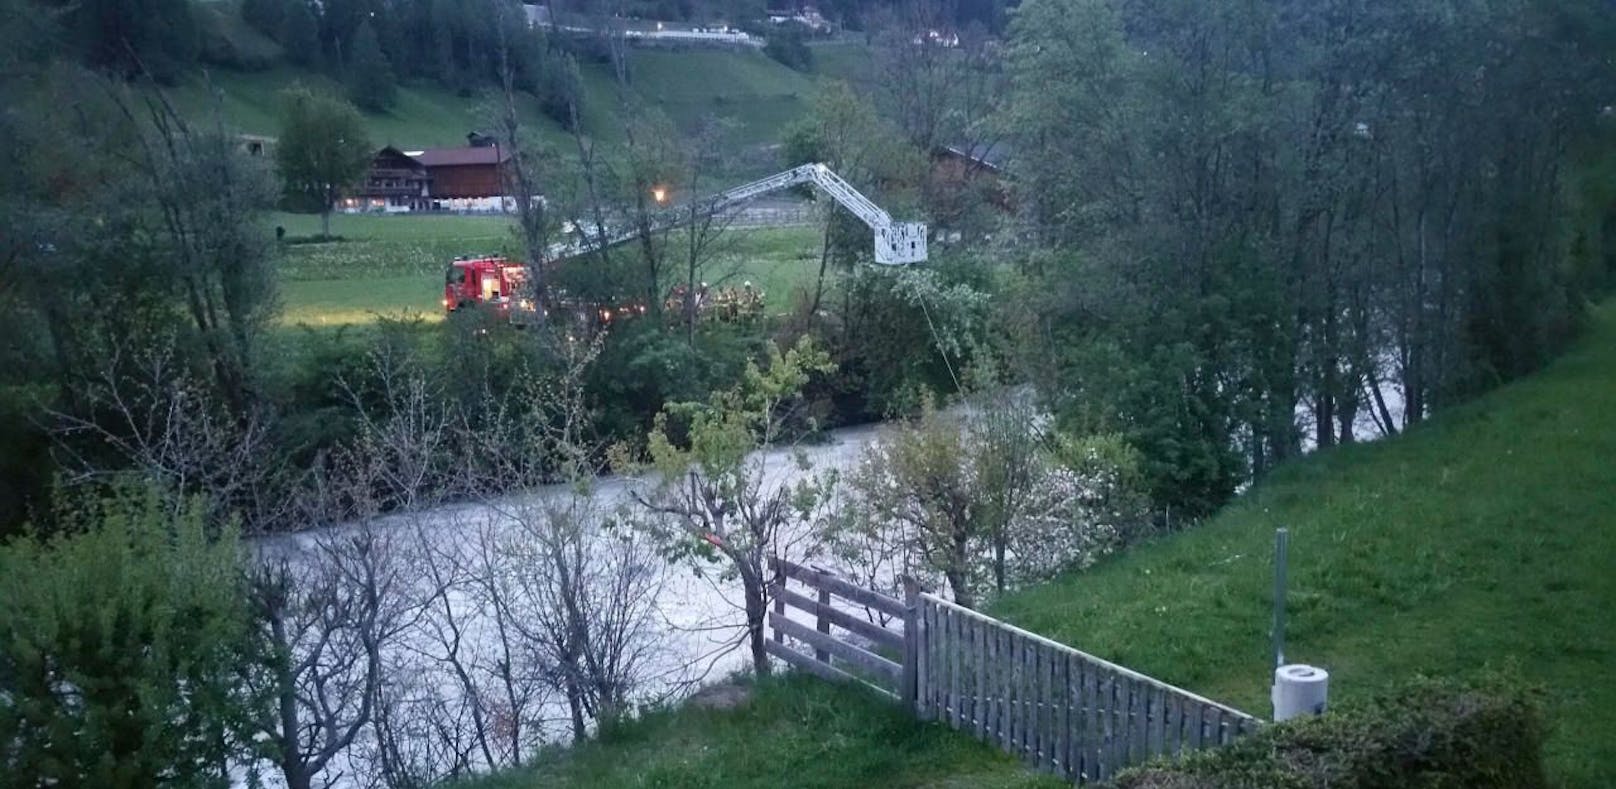 Wasserleiche in Tirol: Vermisster tot geborgen